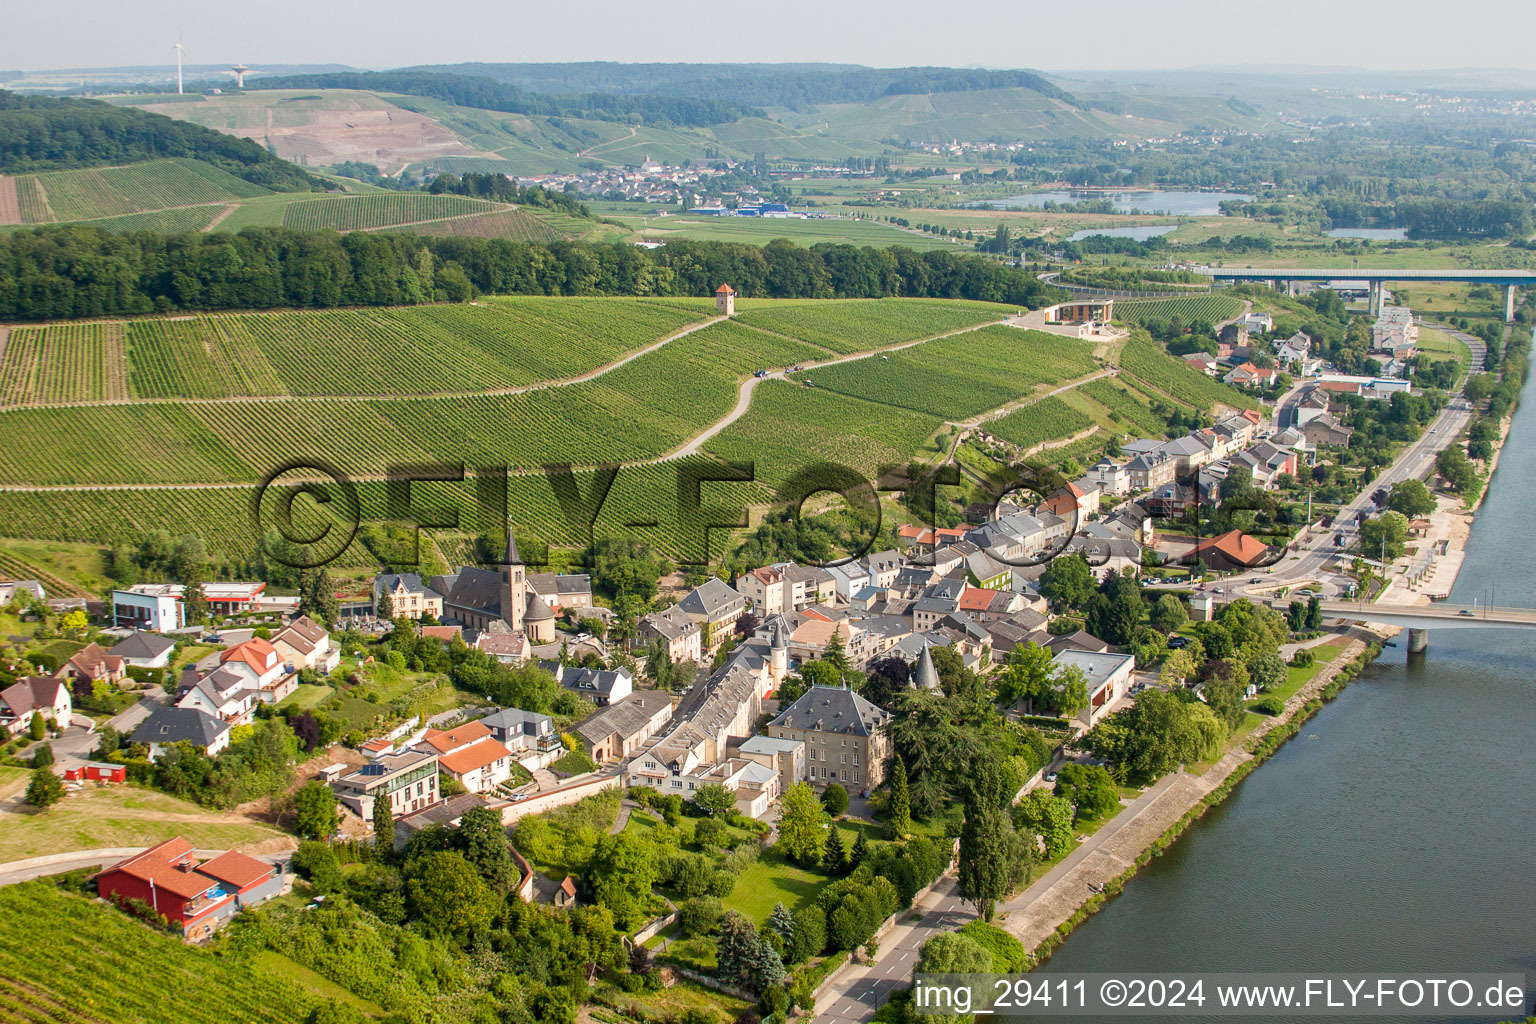 Vue aérienne de Centre du village entre vignes et rives de la Moselle dans le quartier de Gréiwemaacher à Schengen dans le département Greiwemacher, Luxembourg